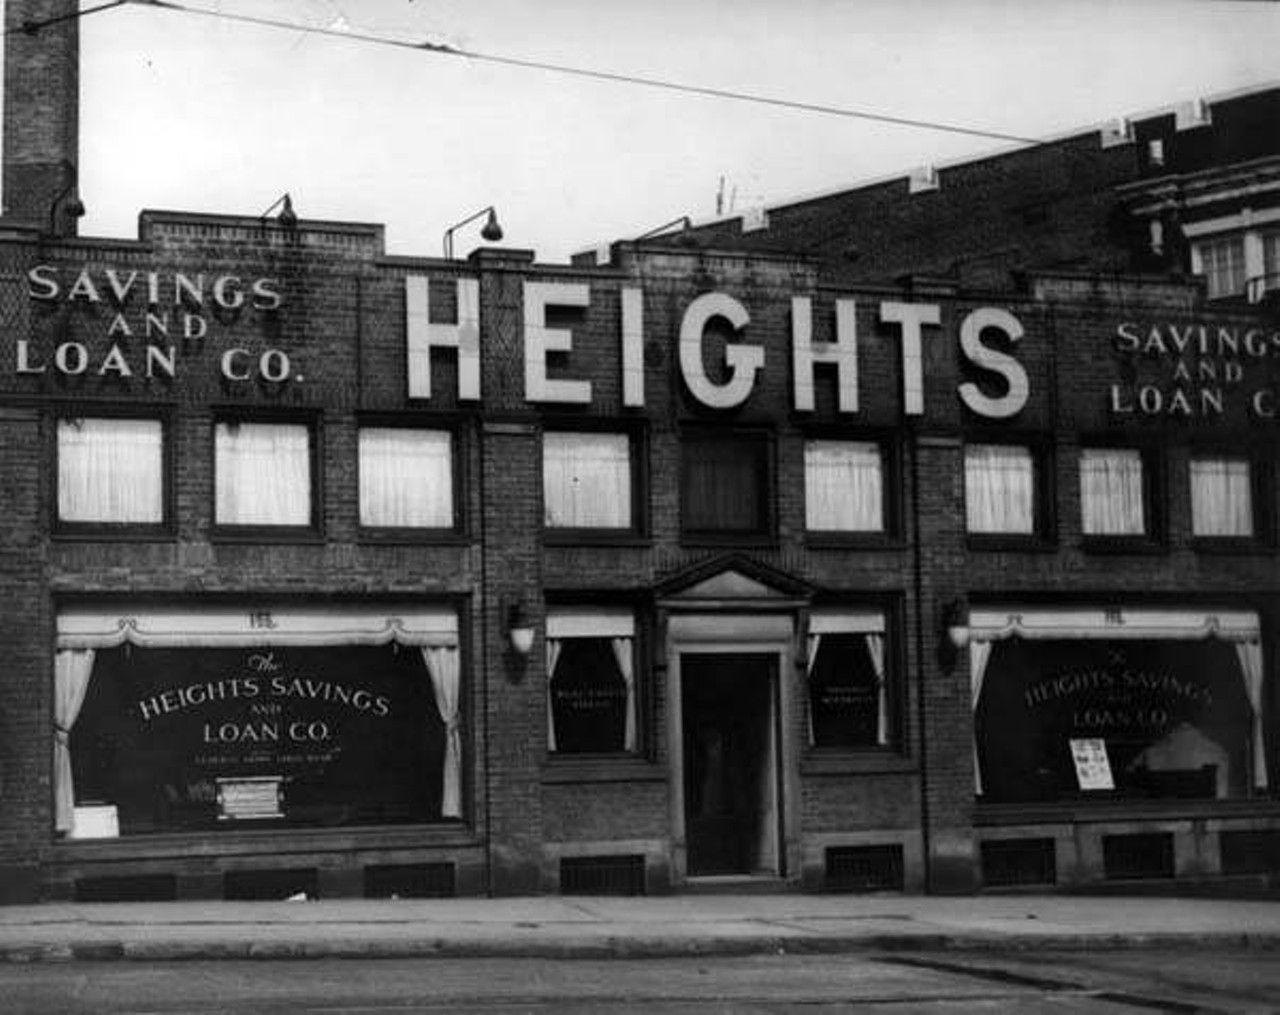  Heights Savings and Loan Co., 1935 